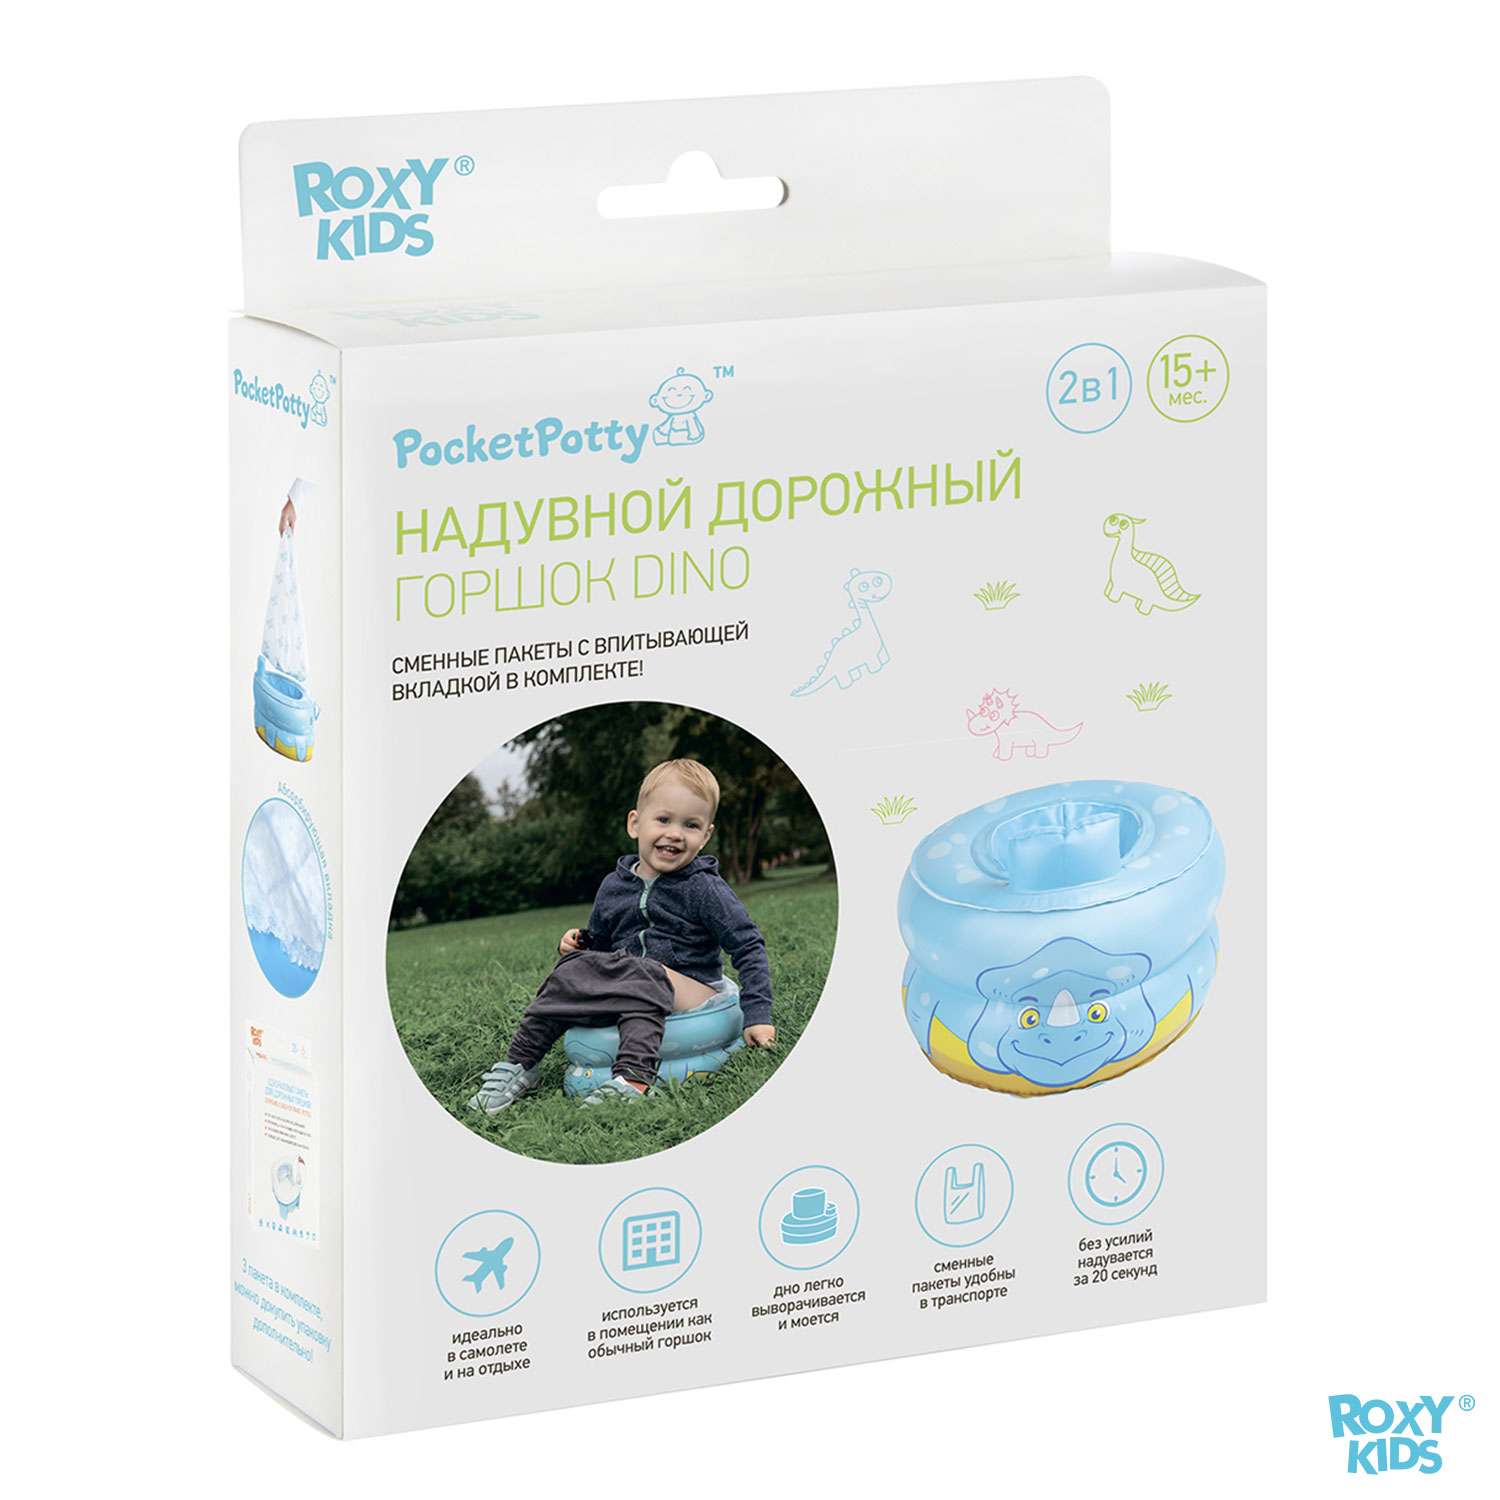 Горшок дорожный ROXY-KIDS надувной для детей PocketPotty Динозавр - фото 8